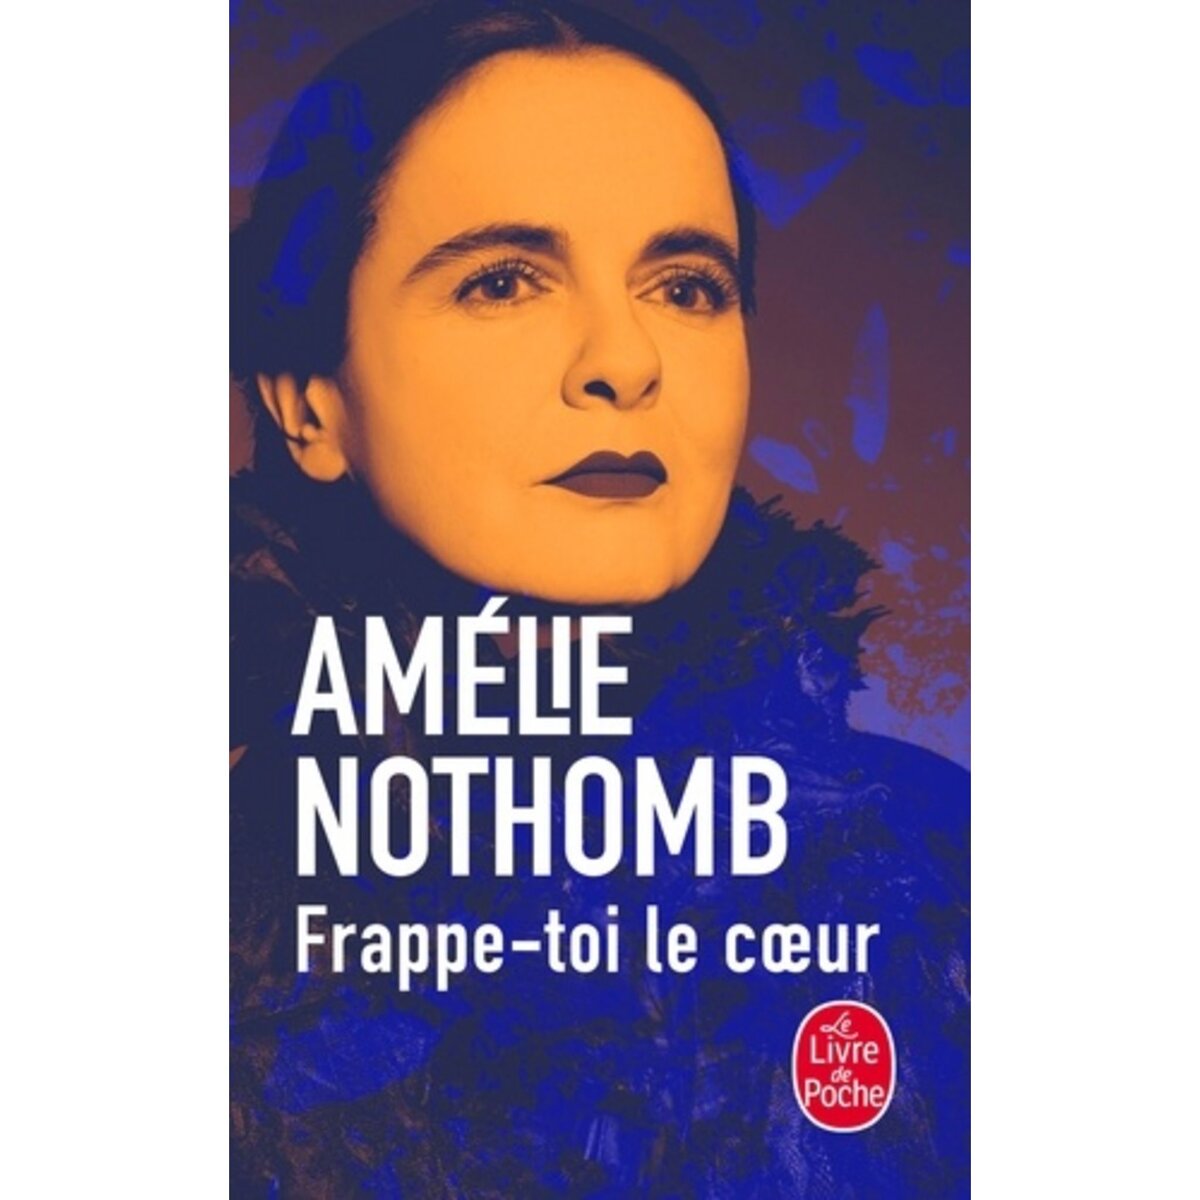  FRAPPE-TOI LE COEUR, Nothomb Amélie